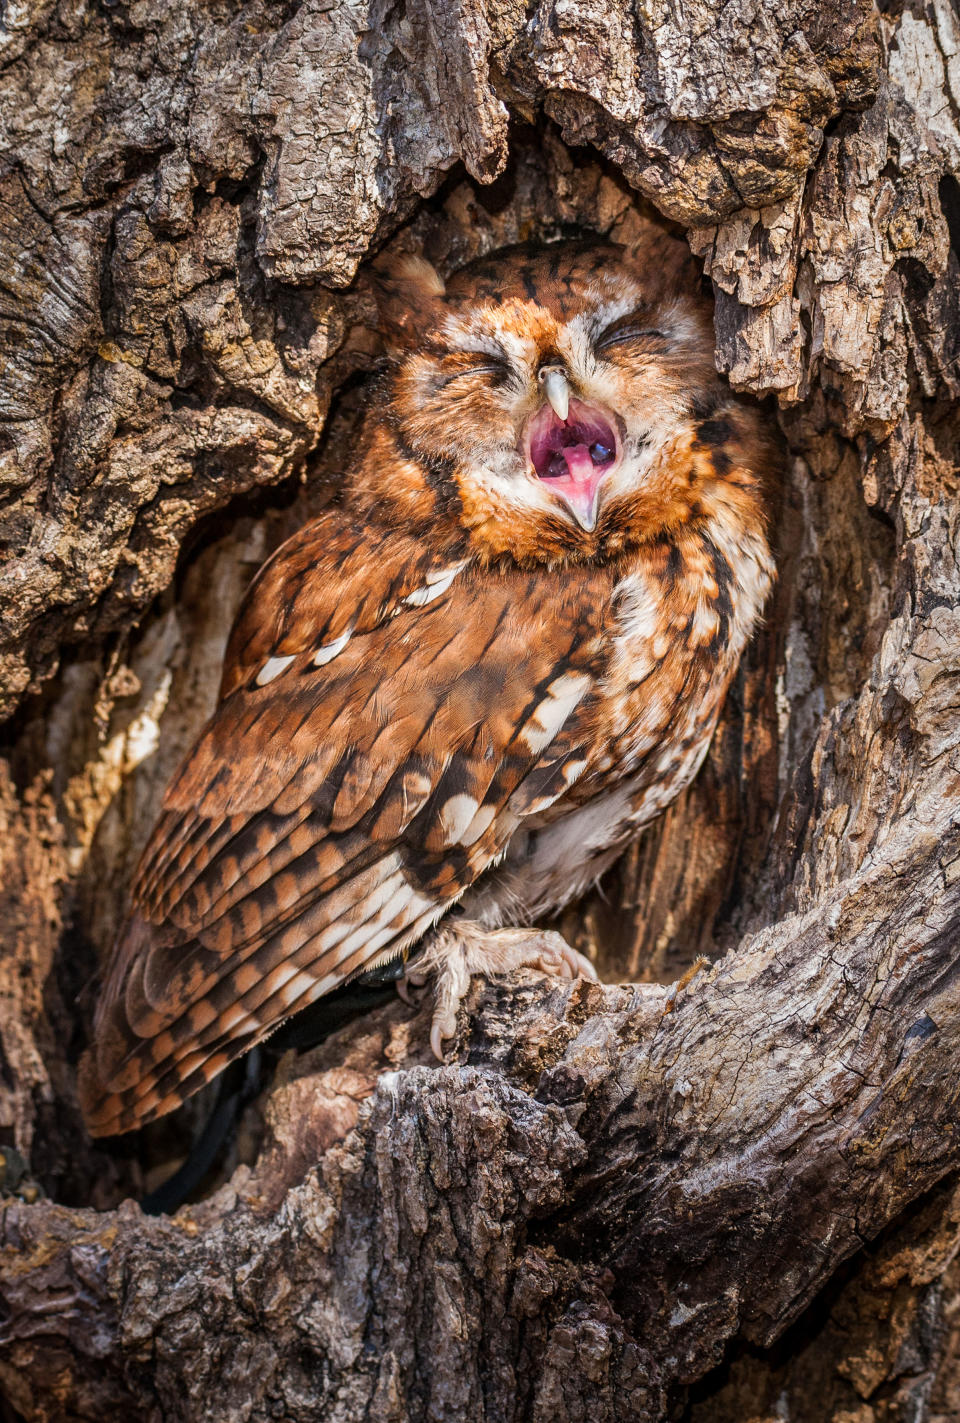 An eastern screech owl. (Photo: Matt Cuda/Caters News)